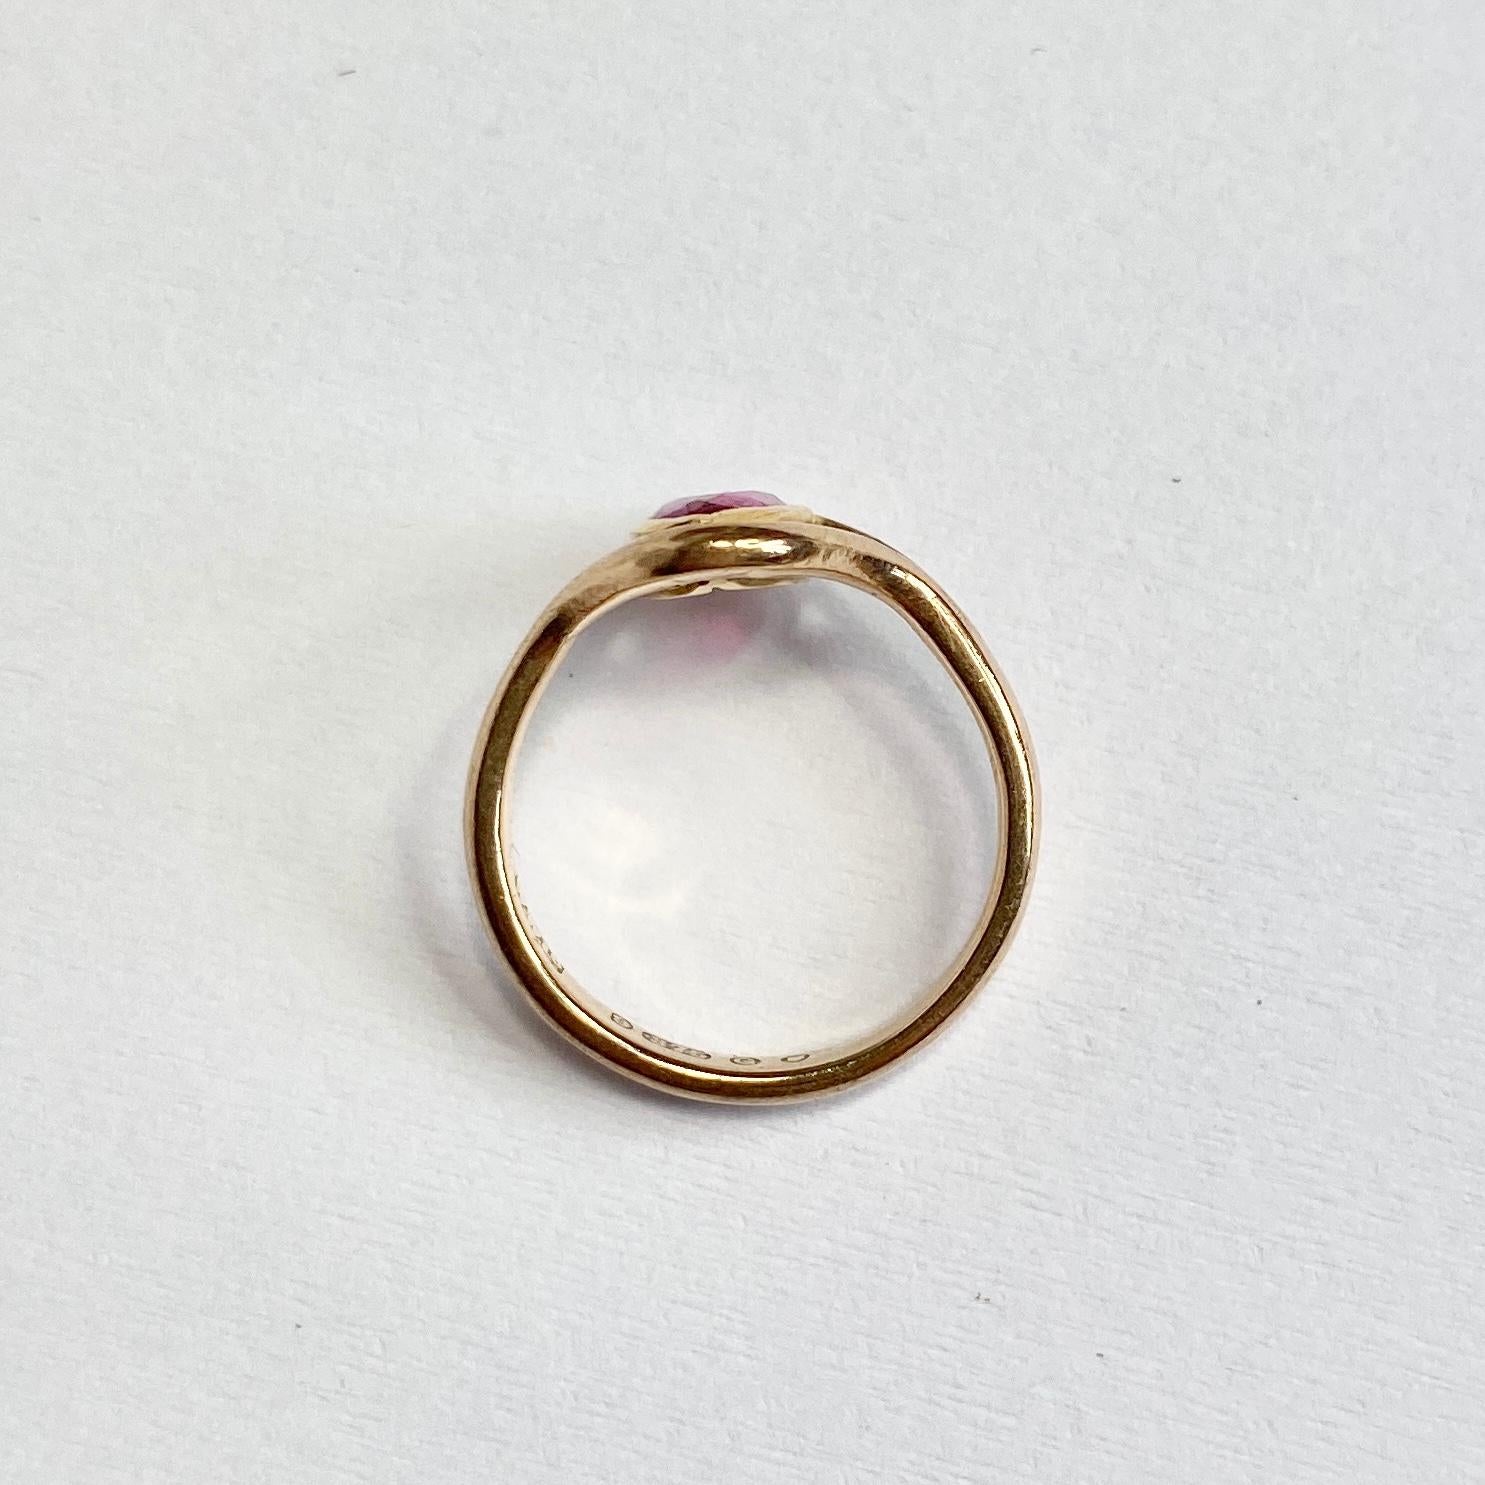 9 carat gold ruby ring